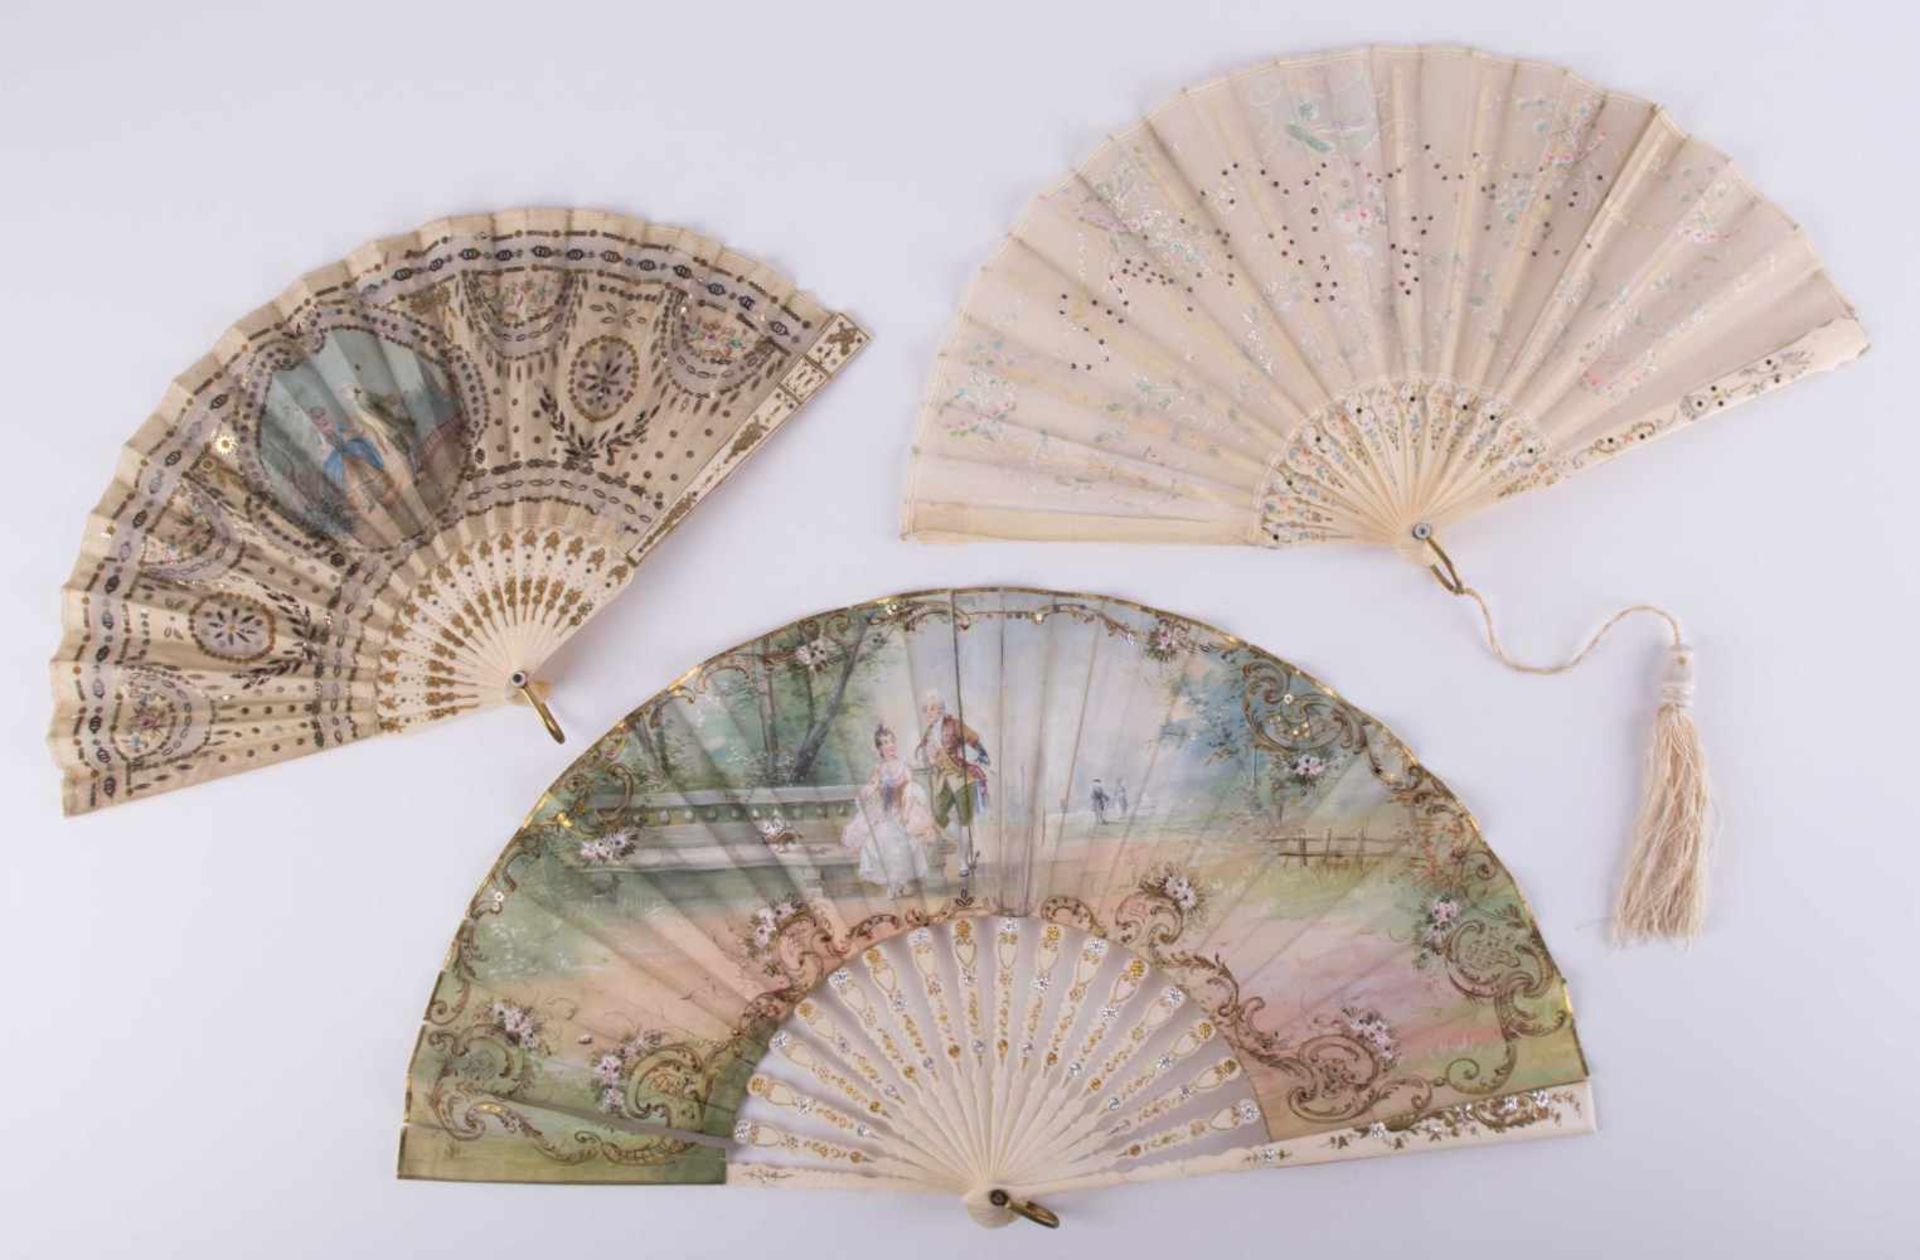 3 Seidenfächer 19. Jhd. / 3 silk fans, 19th century je Bein ziseliert, alle farbig bemalt mit